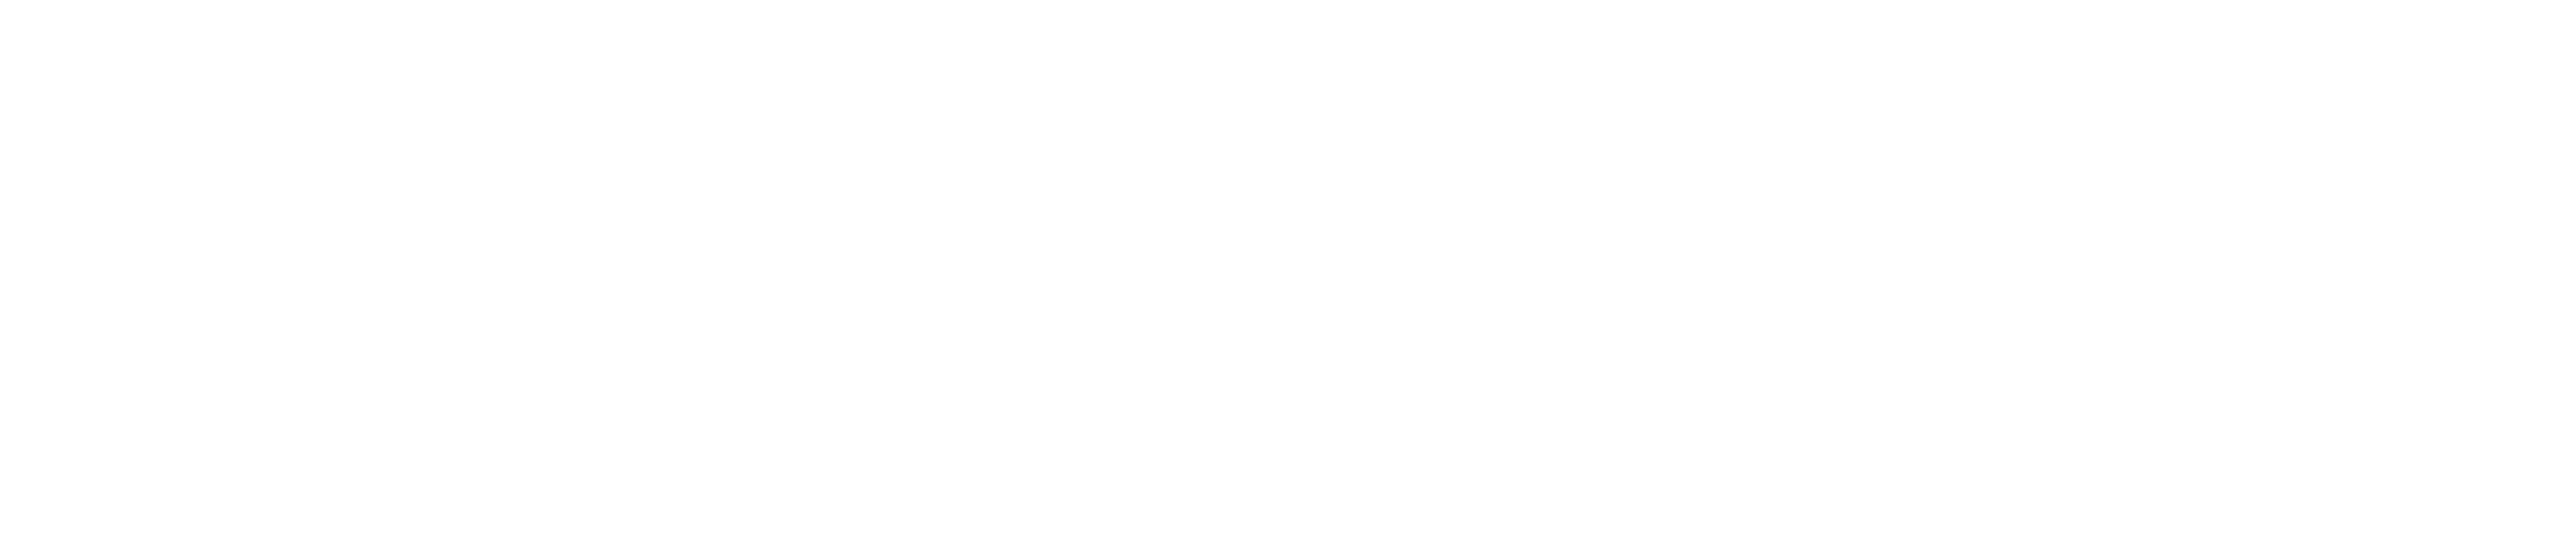 Exelon_Mono White Horizontal Reverse_Logo